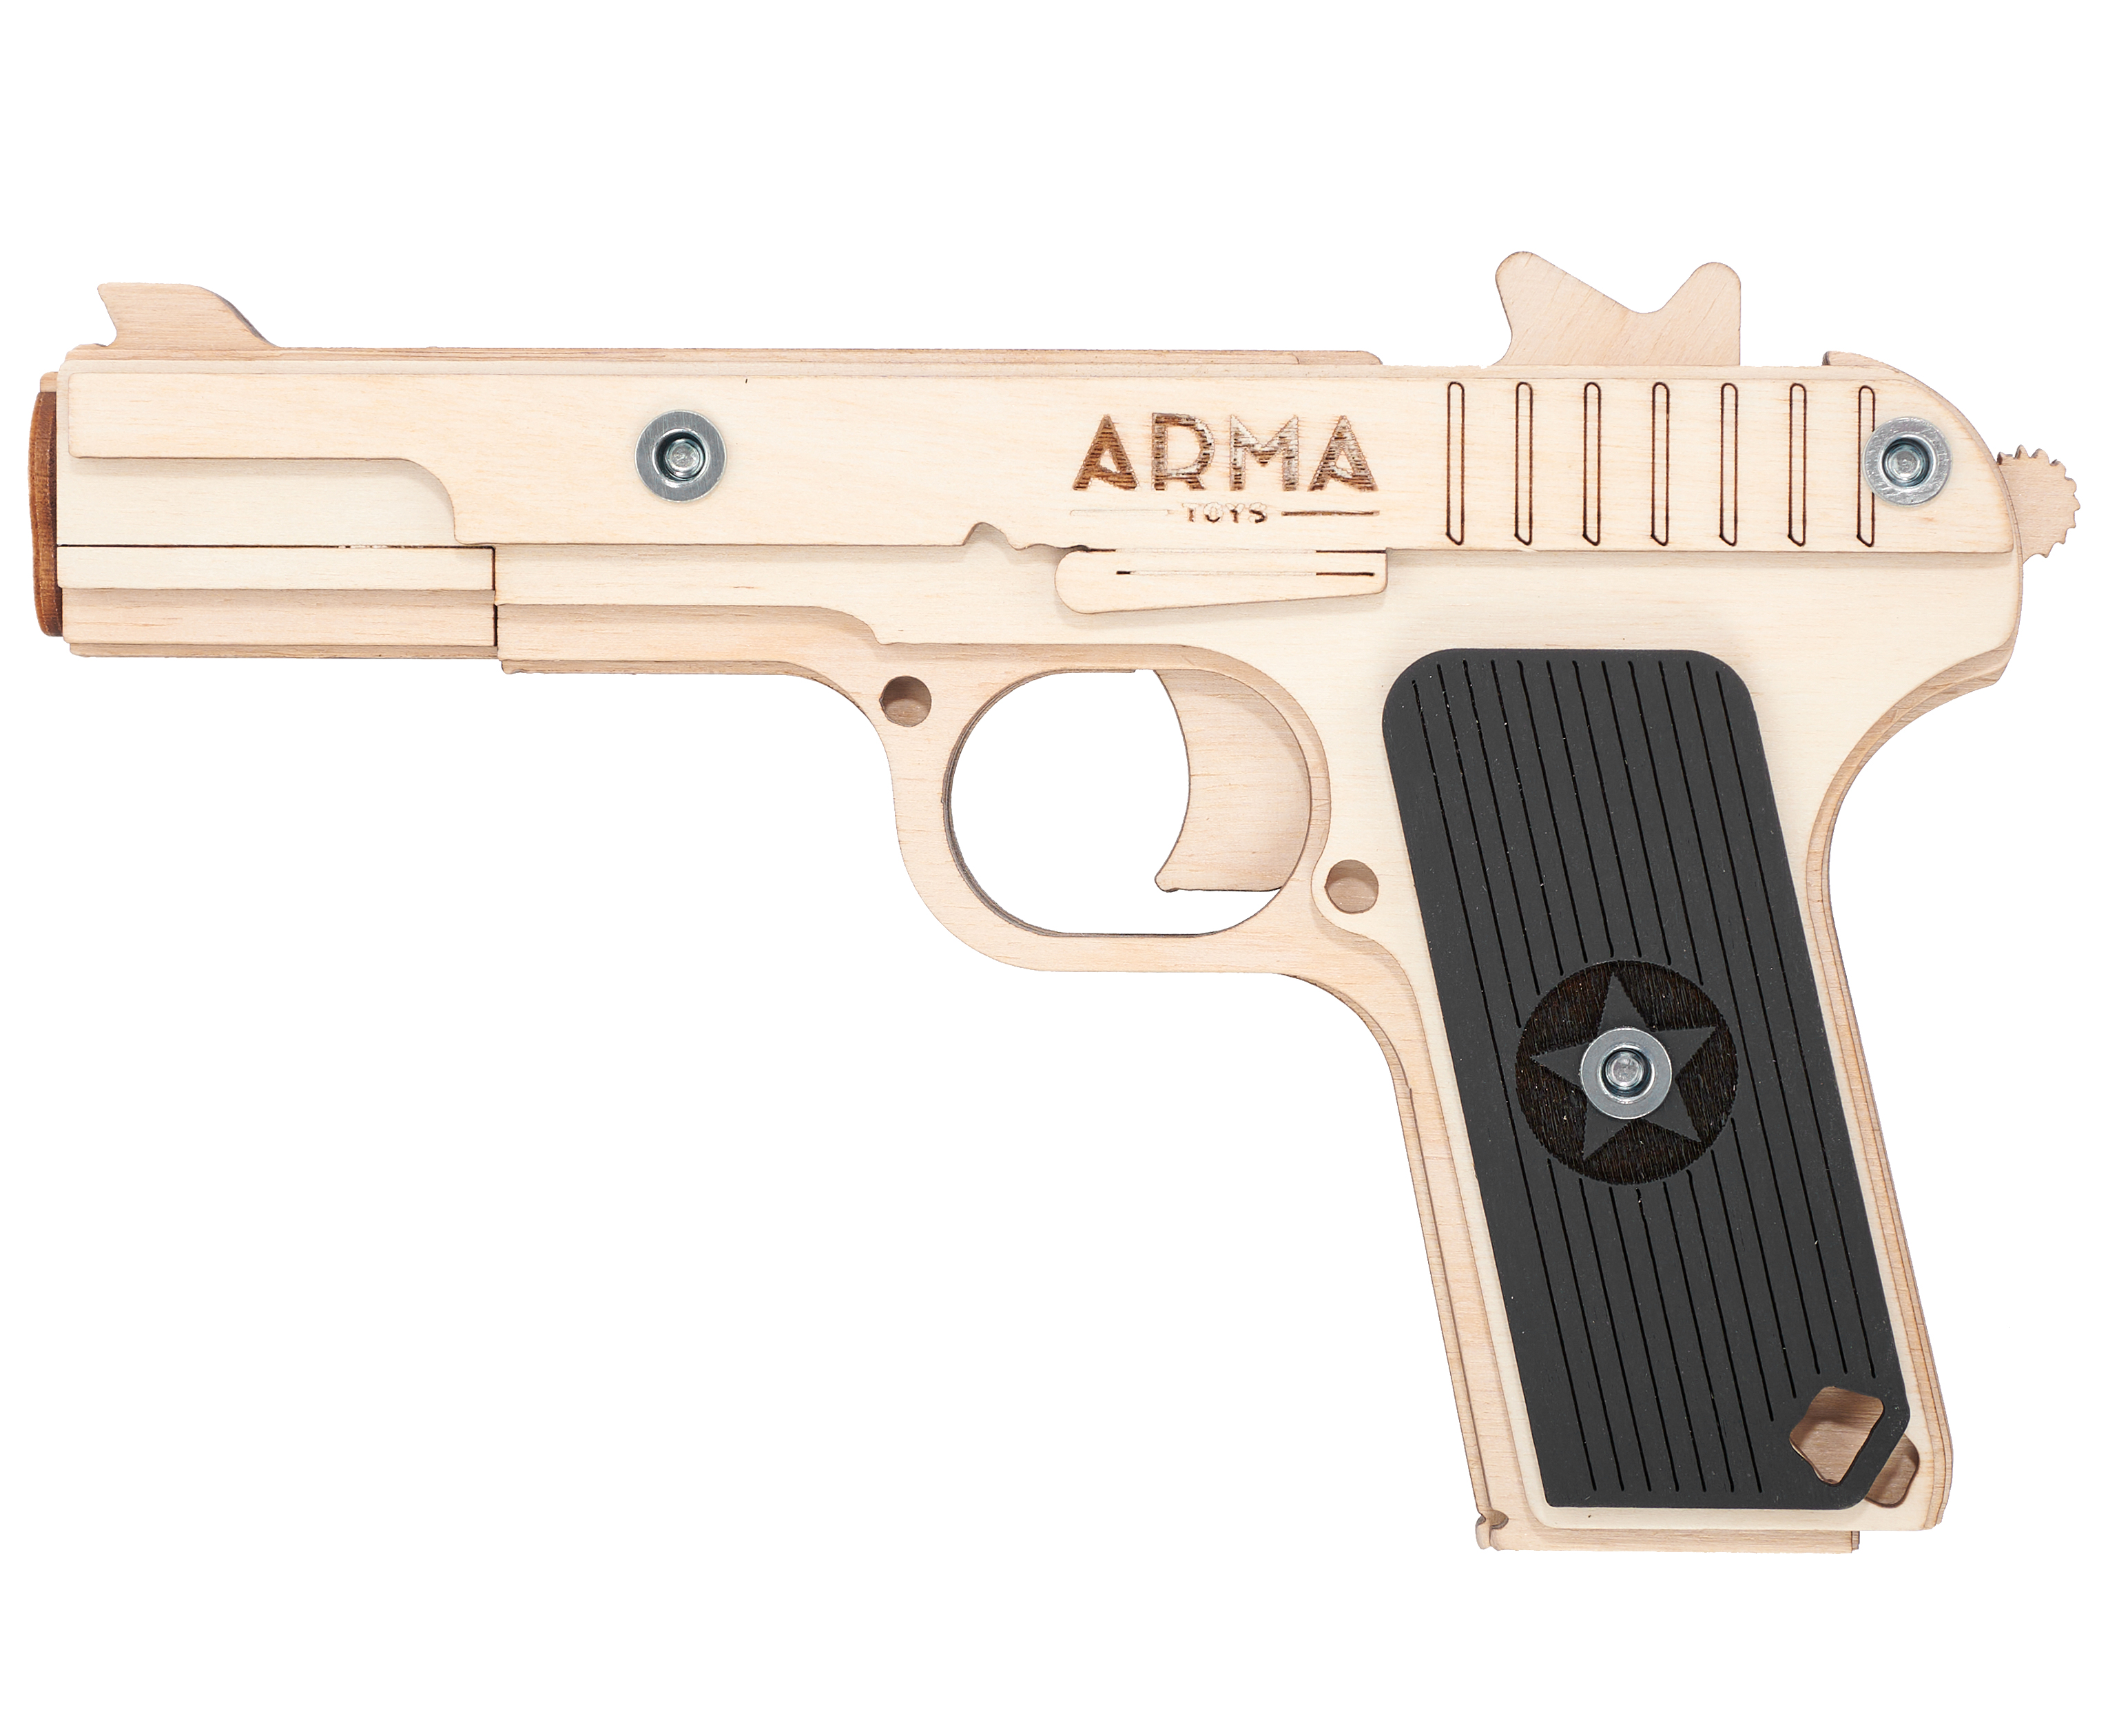 Резинкострел игрушечный Arma toys пистолет ТТ макет, Токарев, AT019 резинкострел arma toys пистолет тт компакт макет токарев atl002